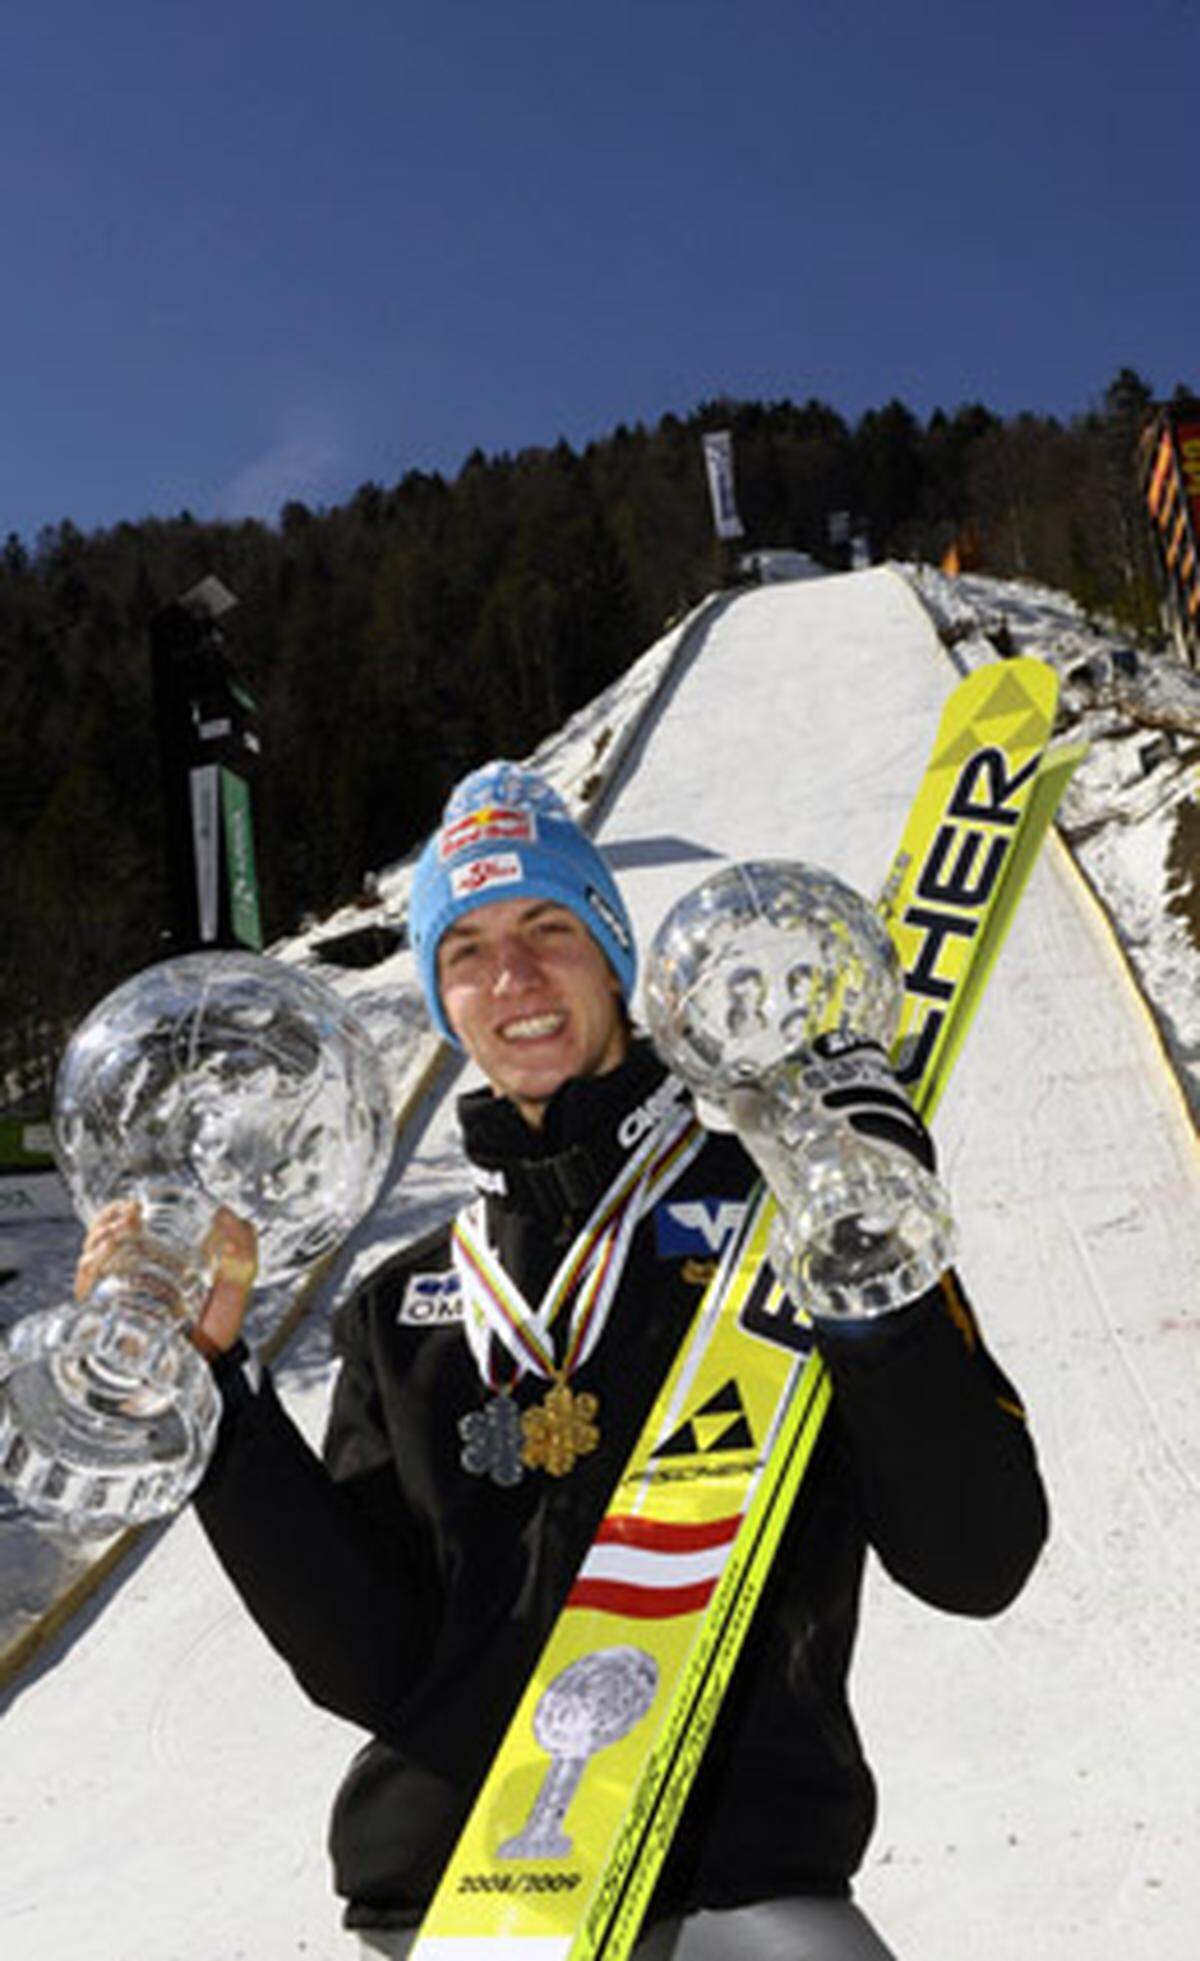 Auf der Letalnica bratov Gorisek, der größten Skiflugschanze der Welt, findet von 19. bis 21. März 2010 die Skiflug-WM statt.